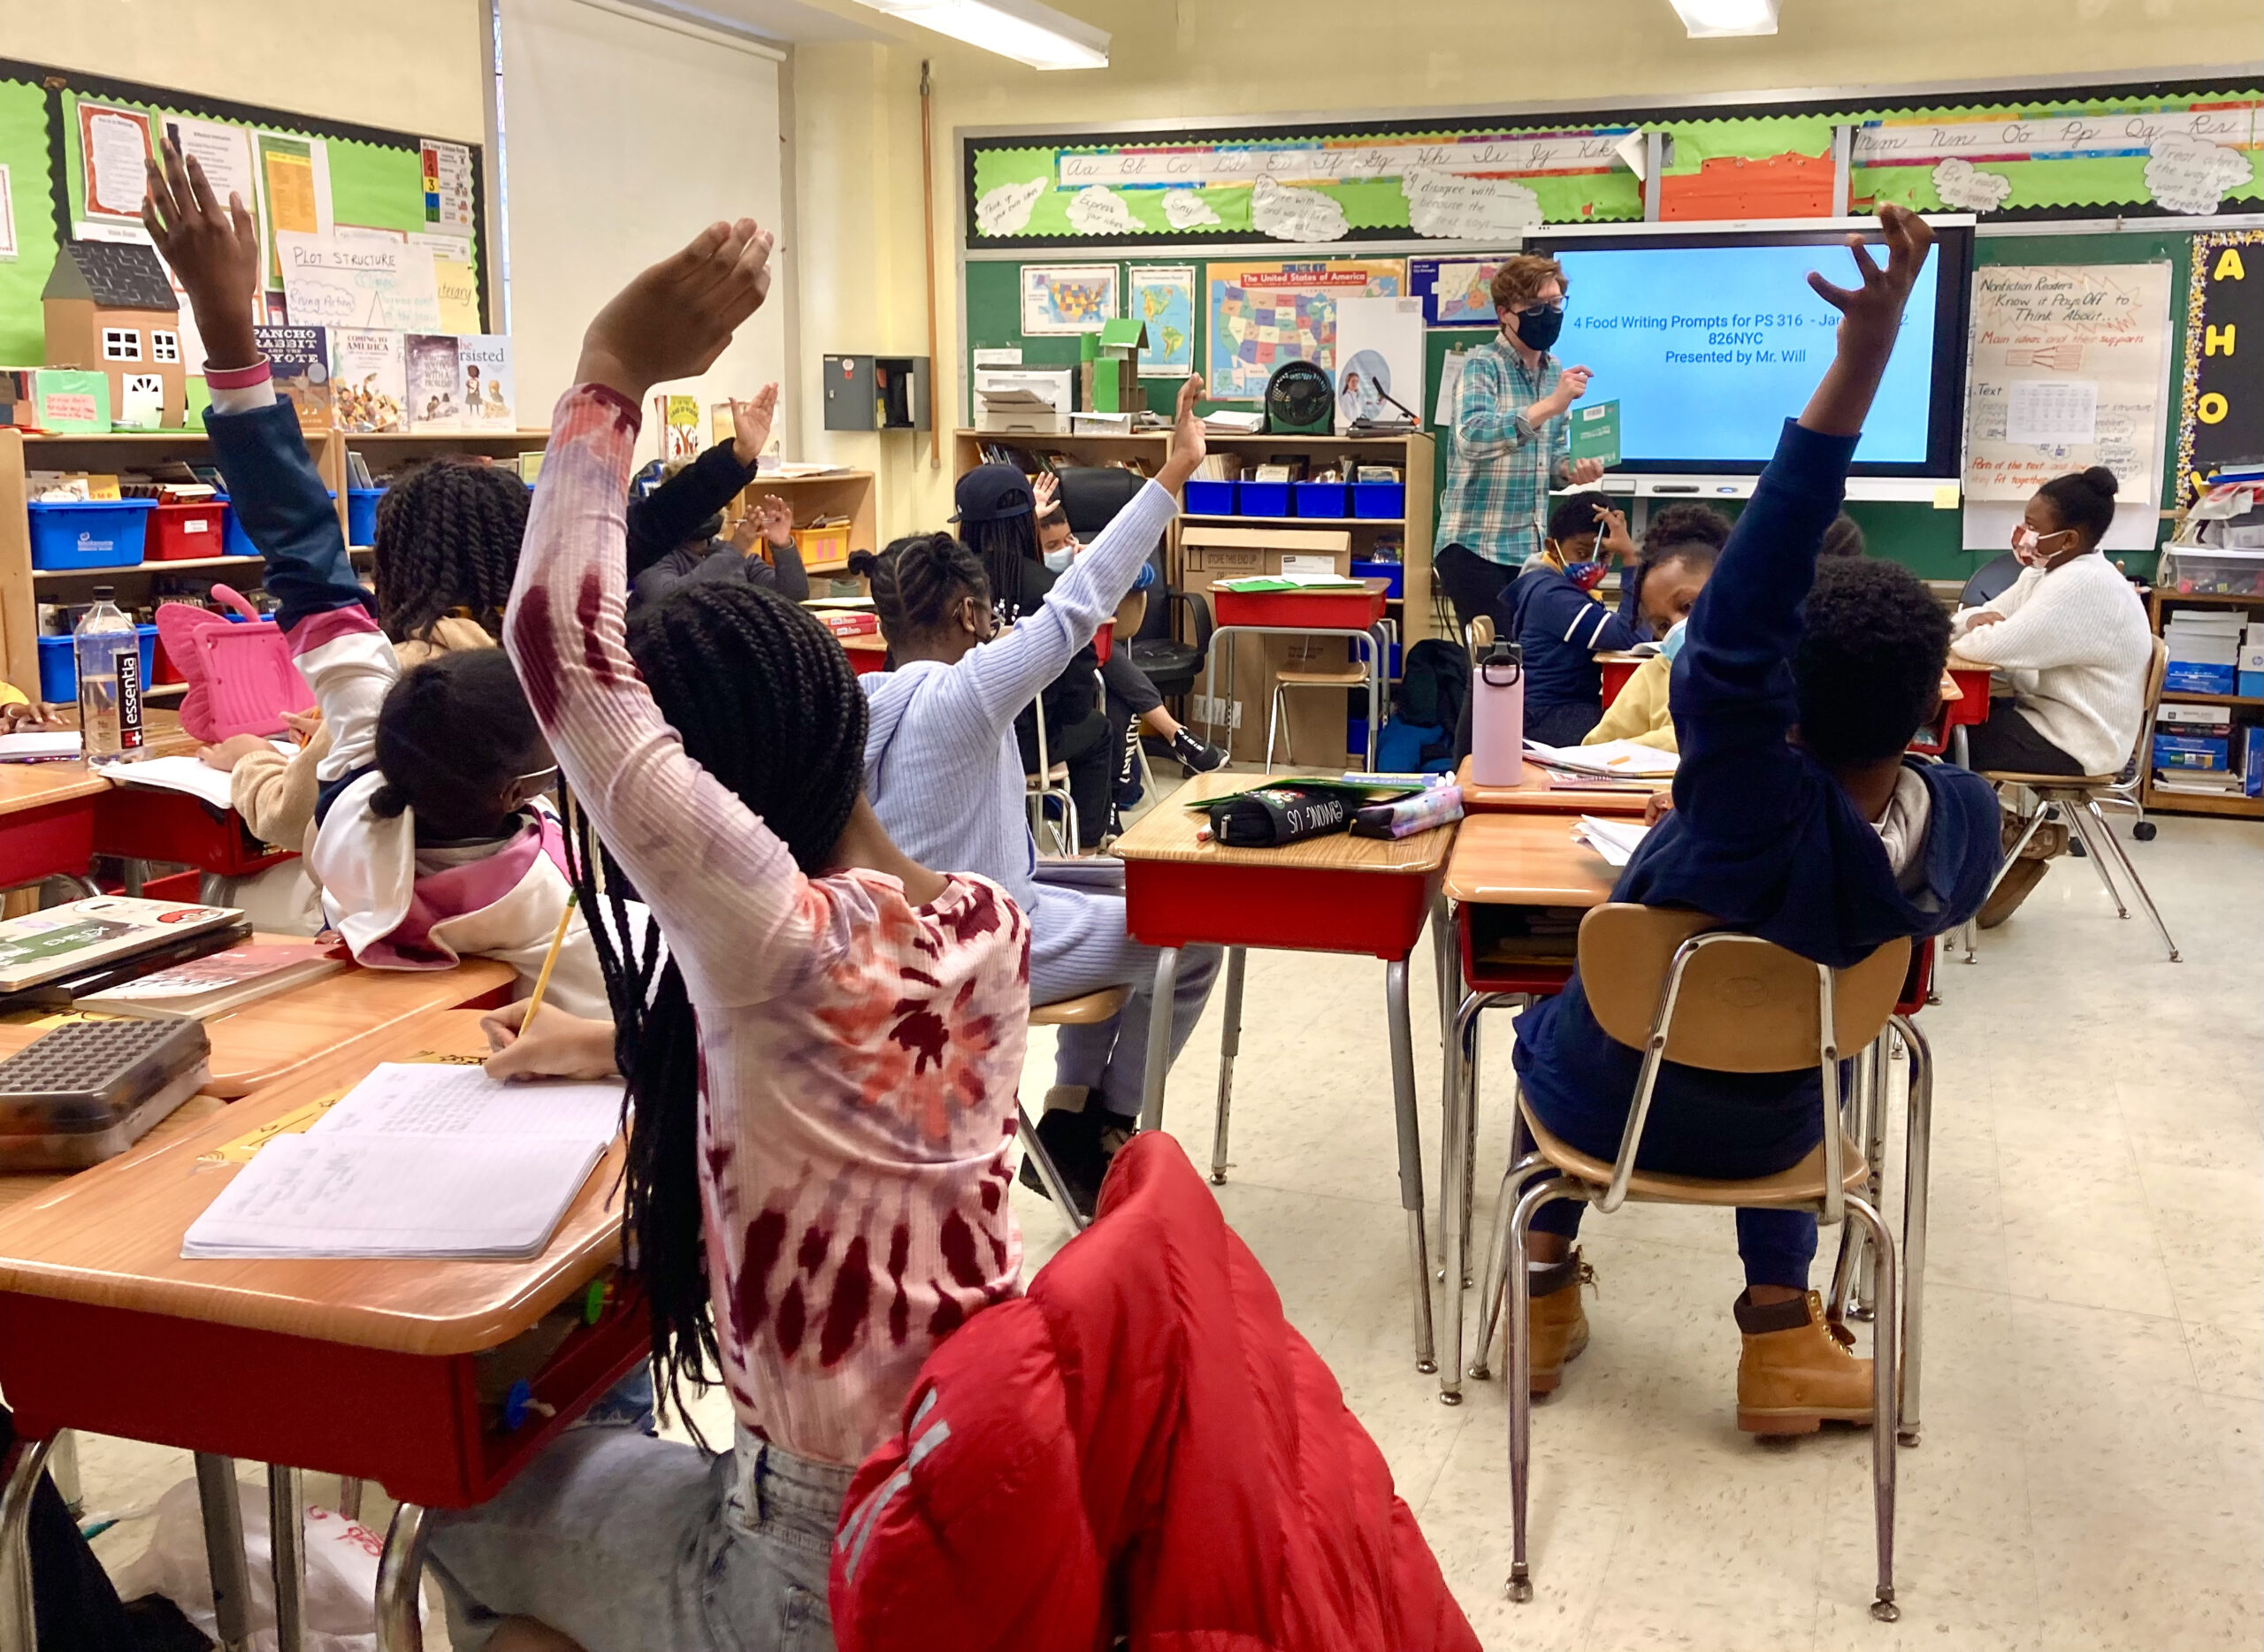 Los estudiantes en un salón de clases de Young Writers Publish levantan la mano con entusiasmo.